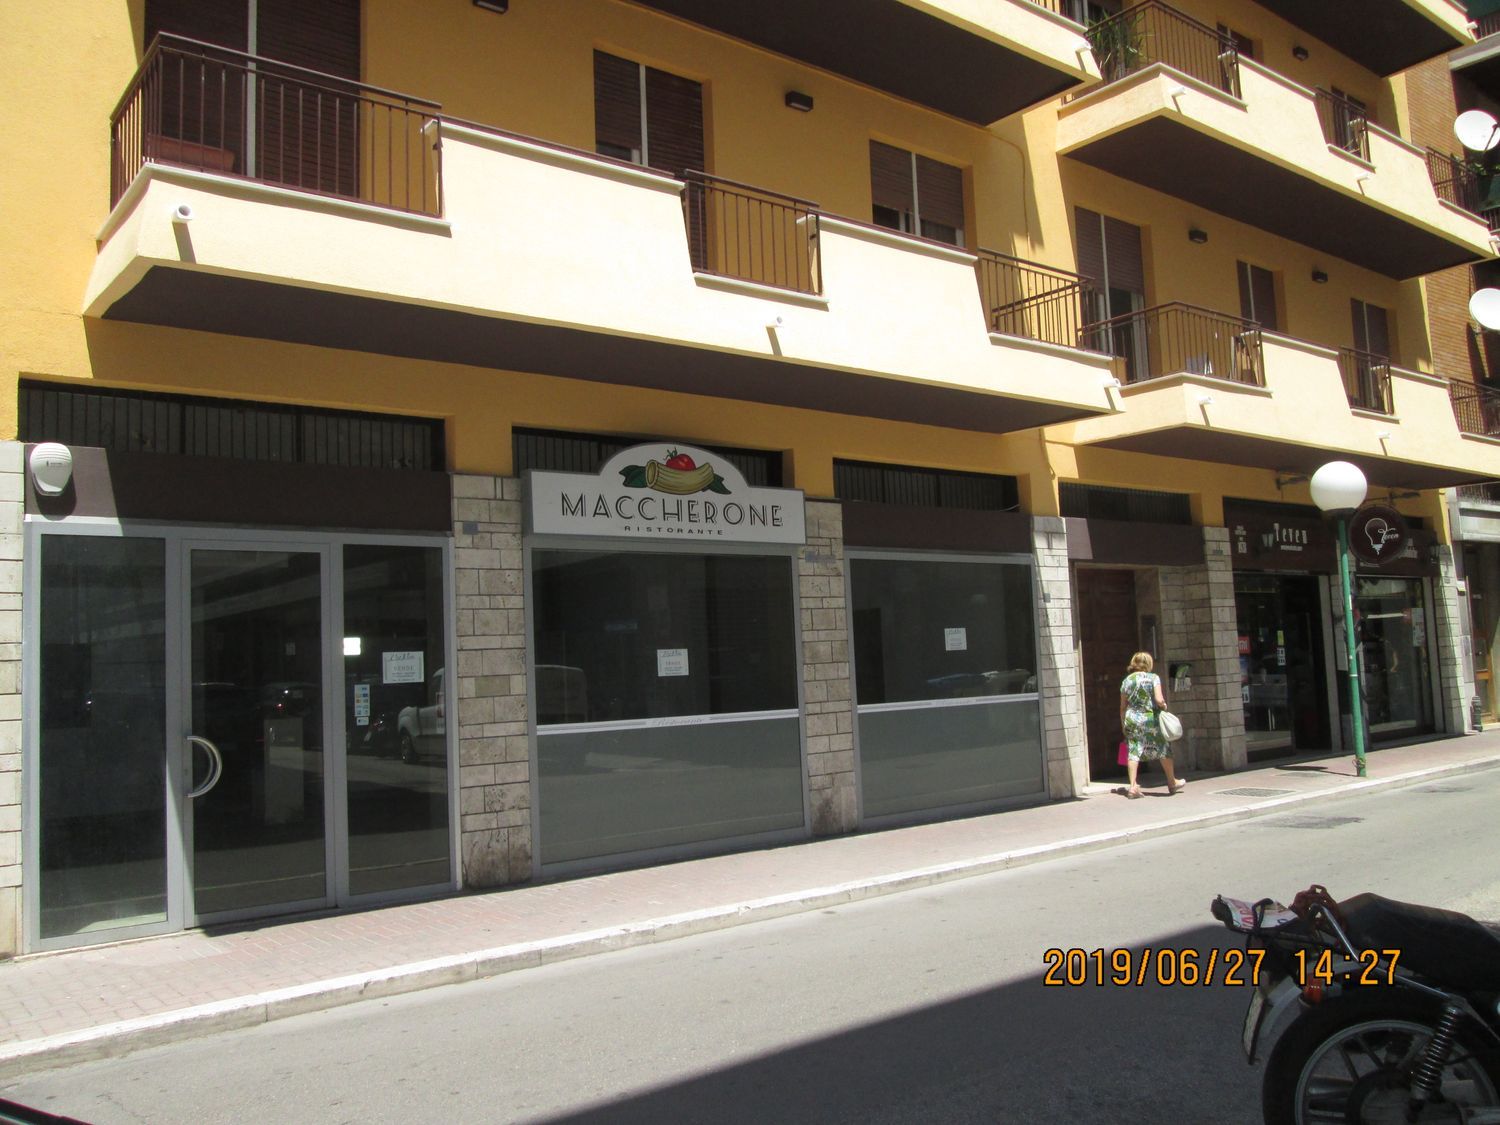 Locale commerciale in vendita in via palermo 123, Pescara